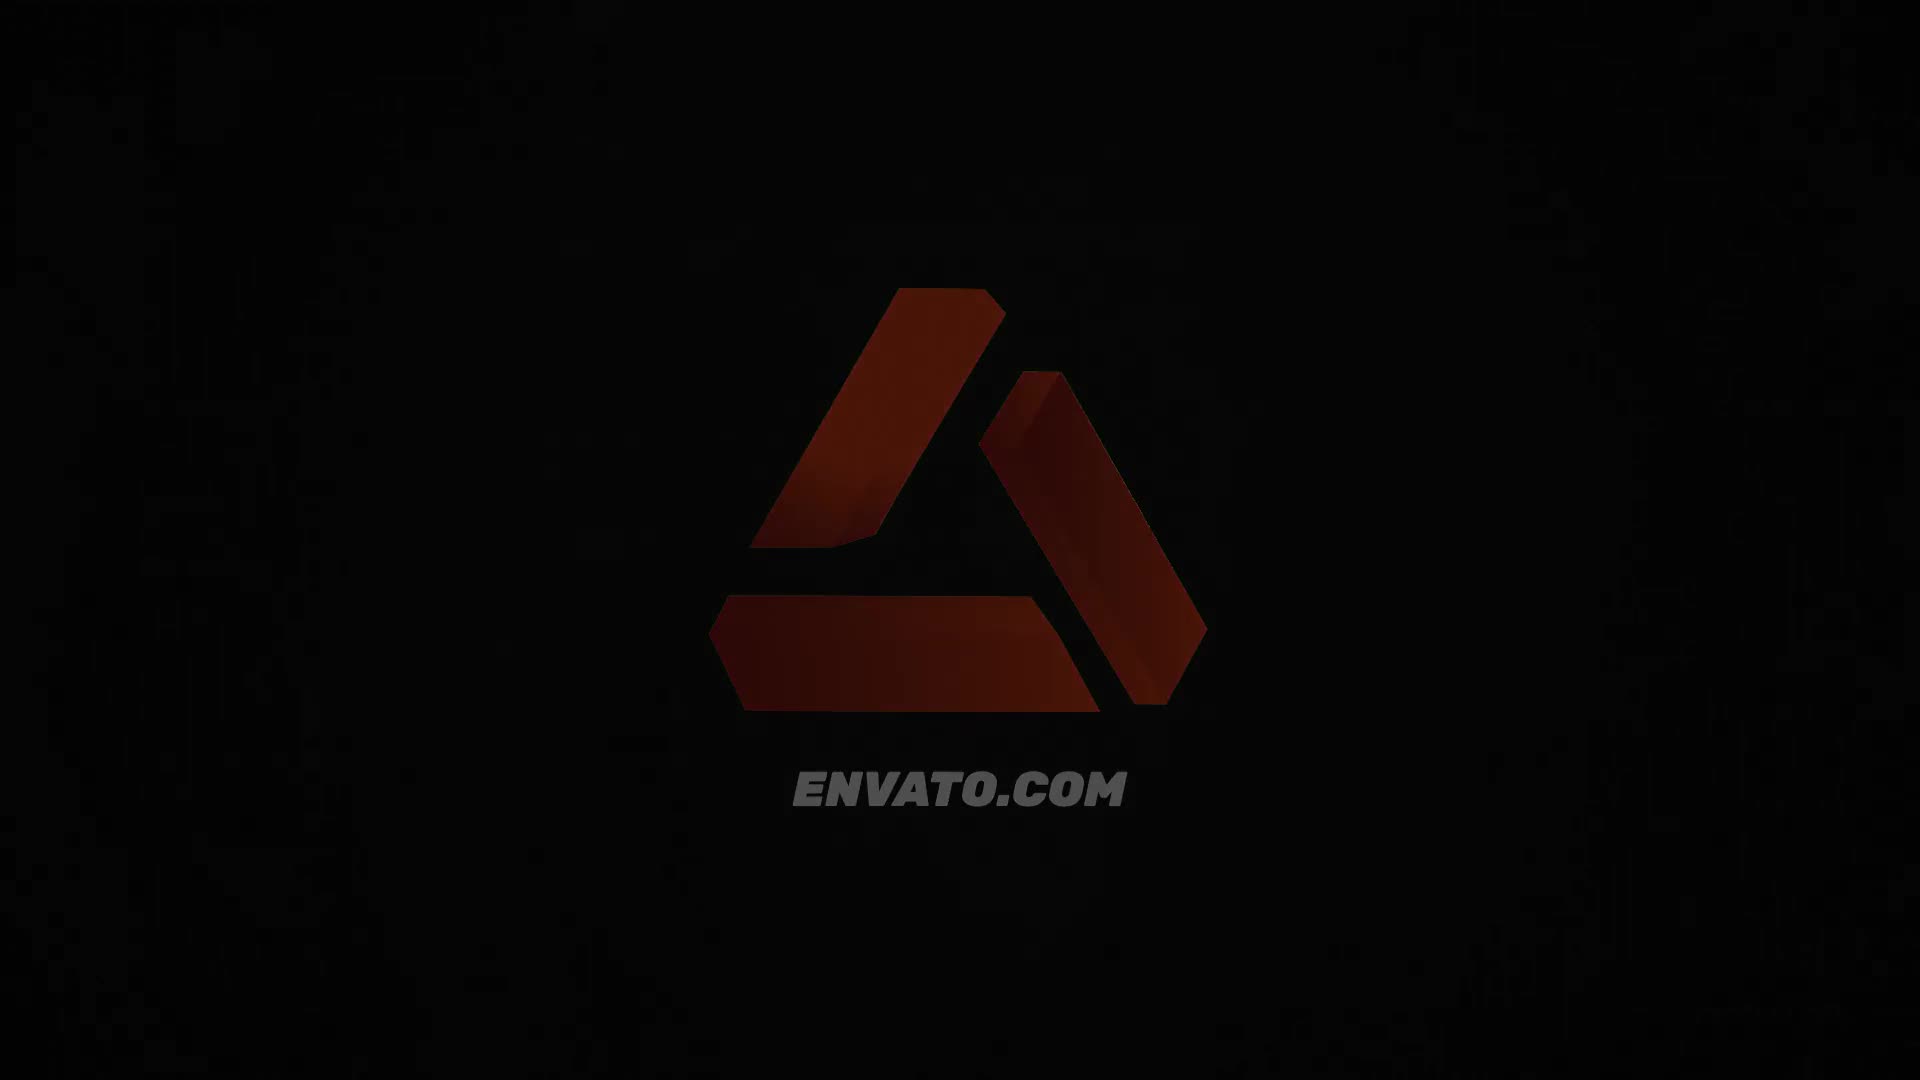 Futuristic Abstract Logo | Mogrt Videohive 33893204 Premiere Pro Image 6